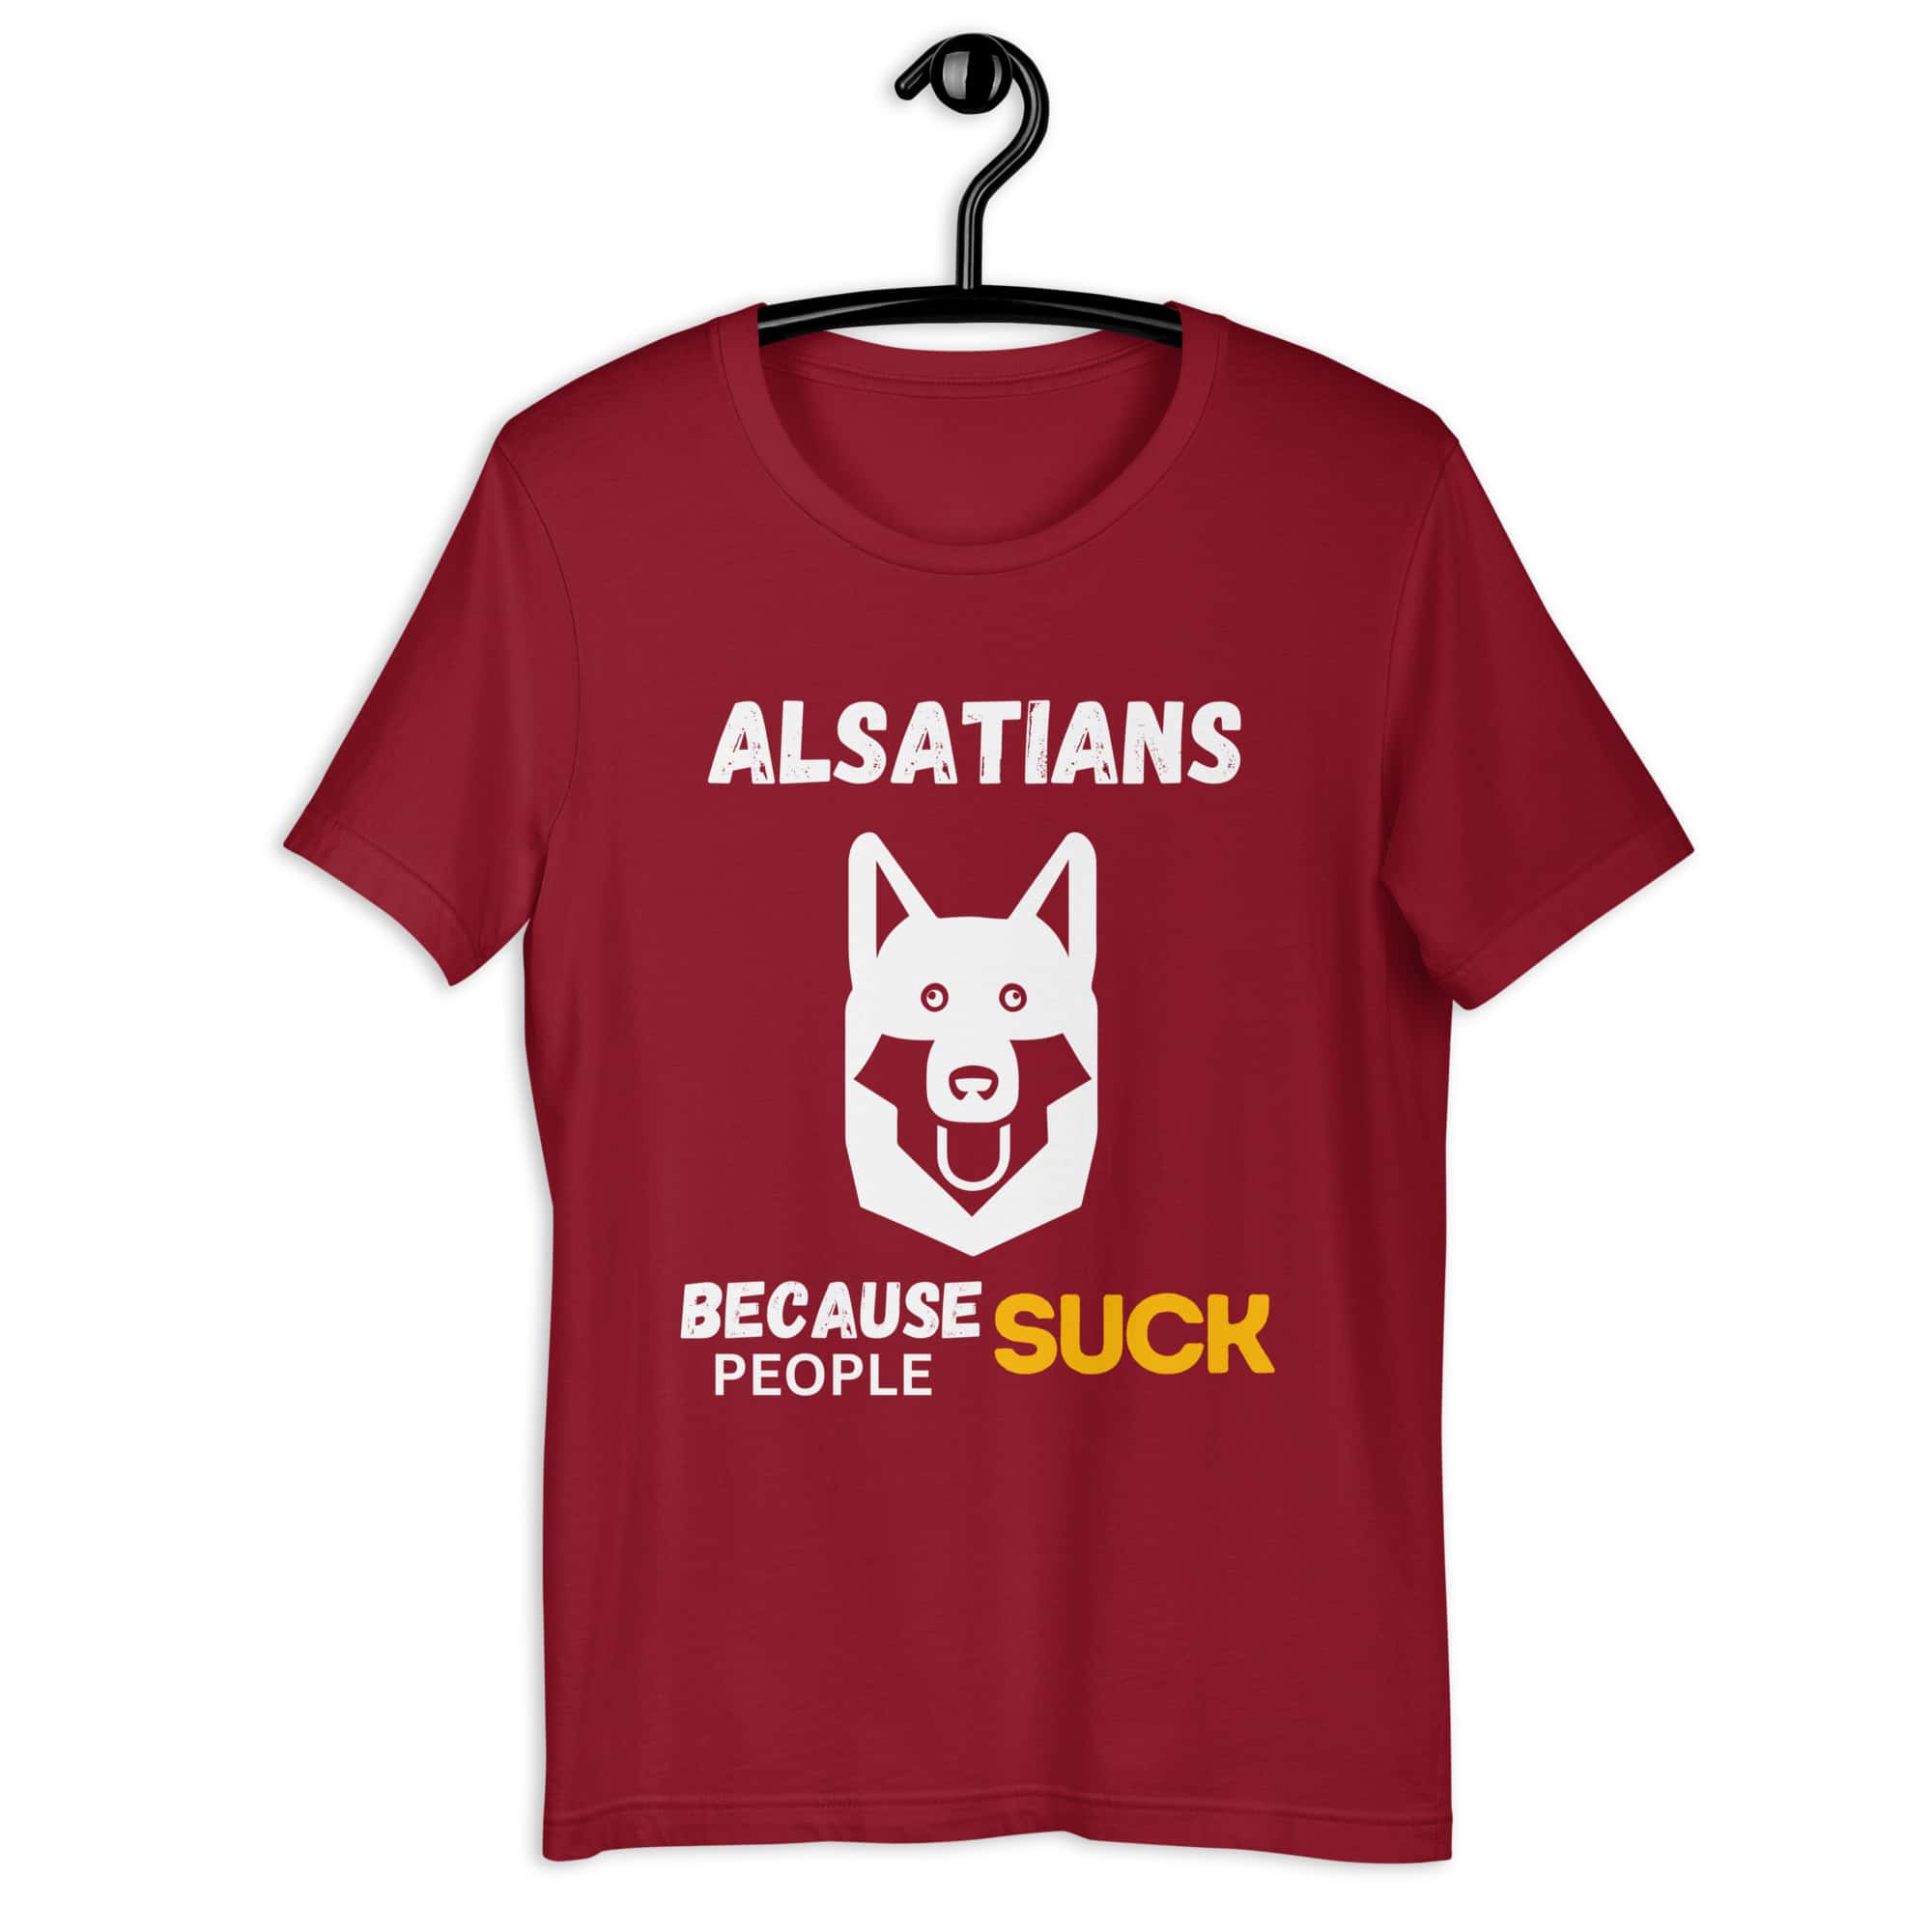 Alsatians Because People Suck Unisex T-Shirt maroon